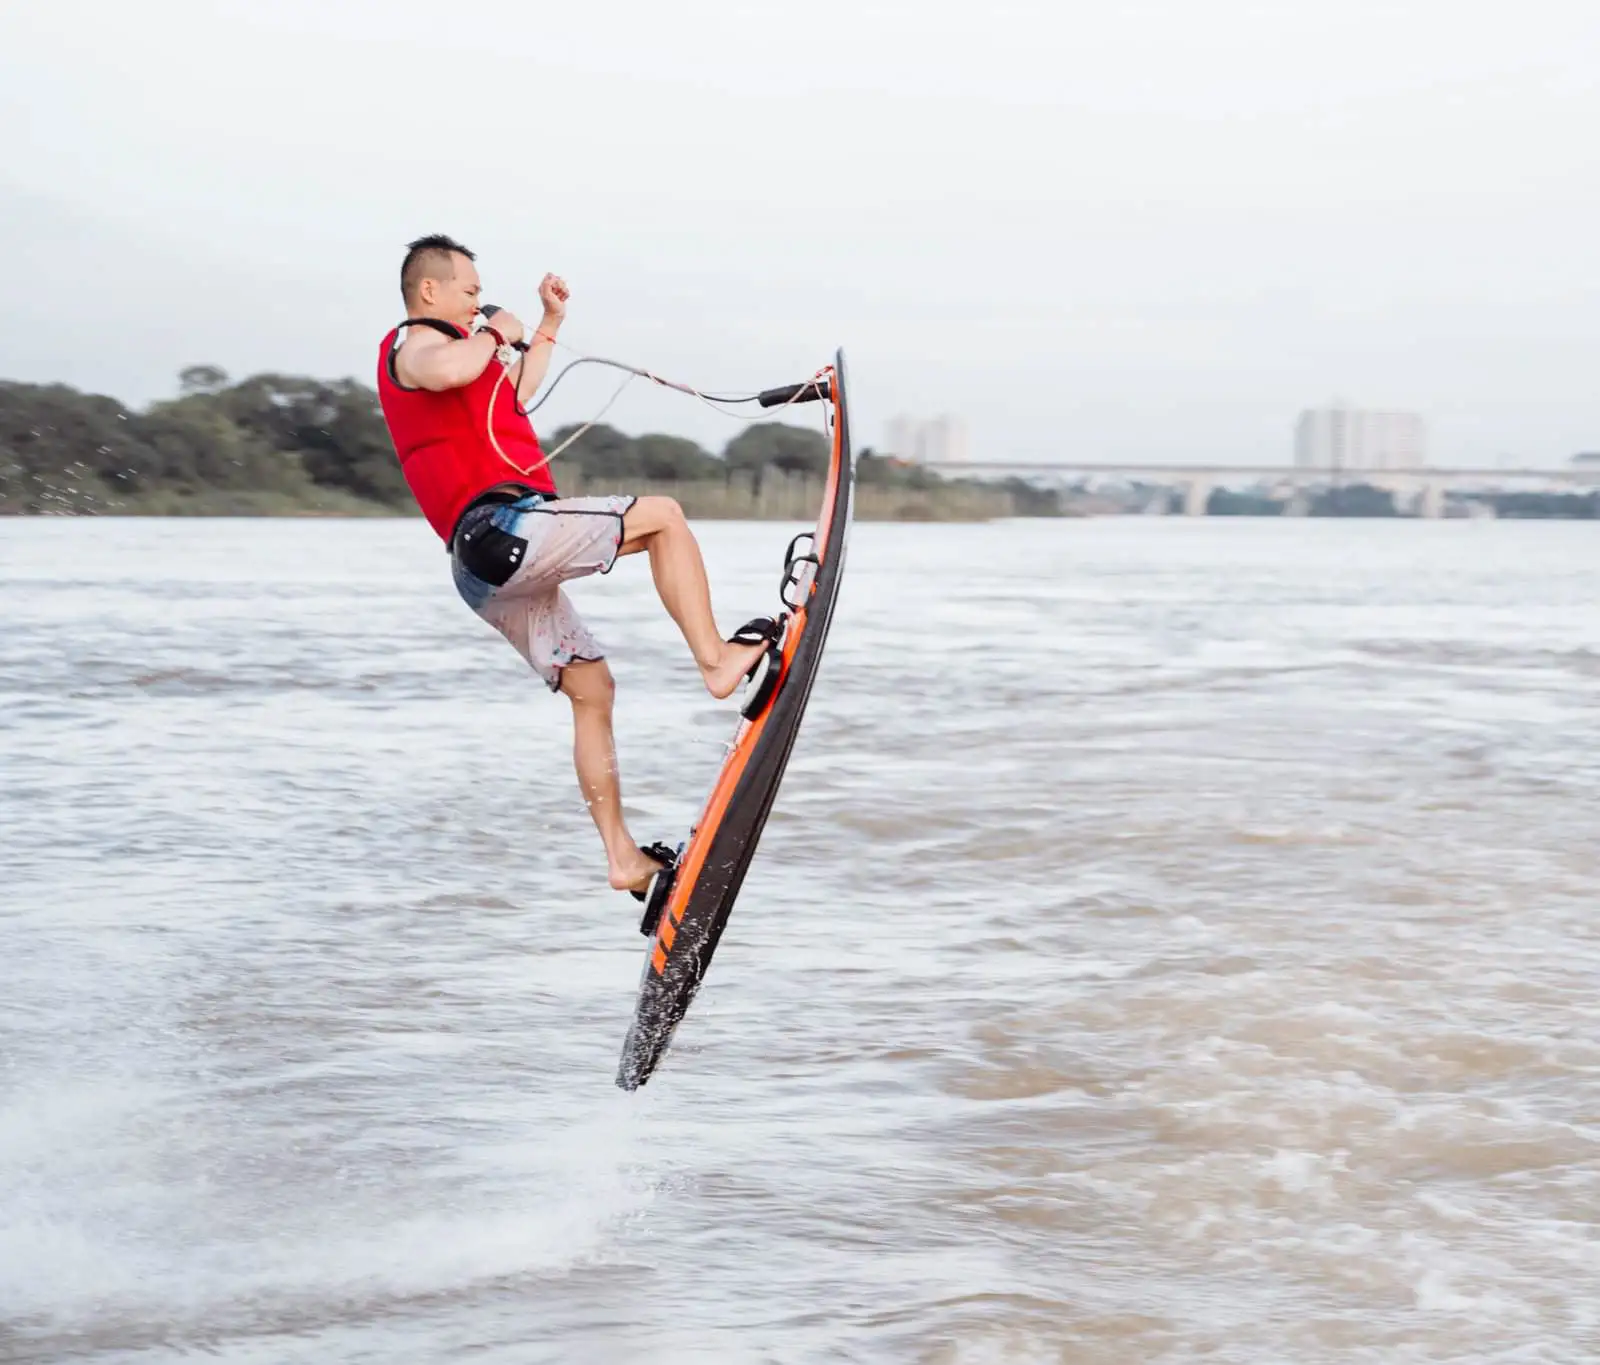 Lướt ván phản lực- Silver surf, thú chơi cảm giác mạnh thách thức giới hạn bản thân tại Việt Nam